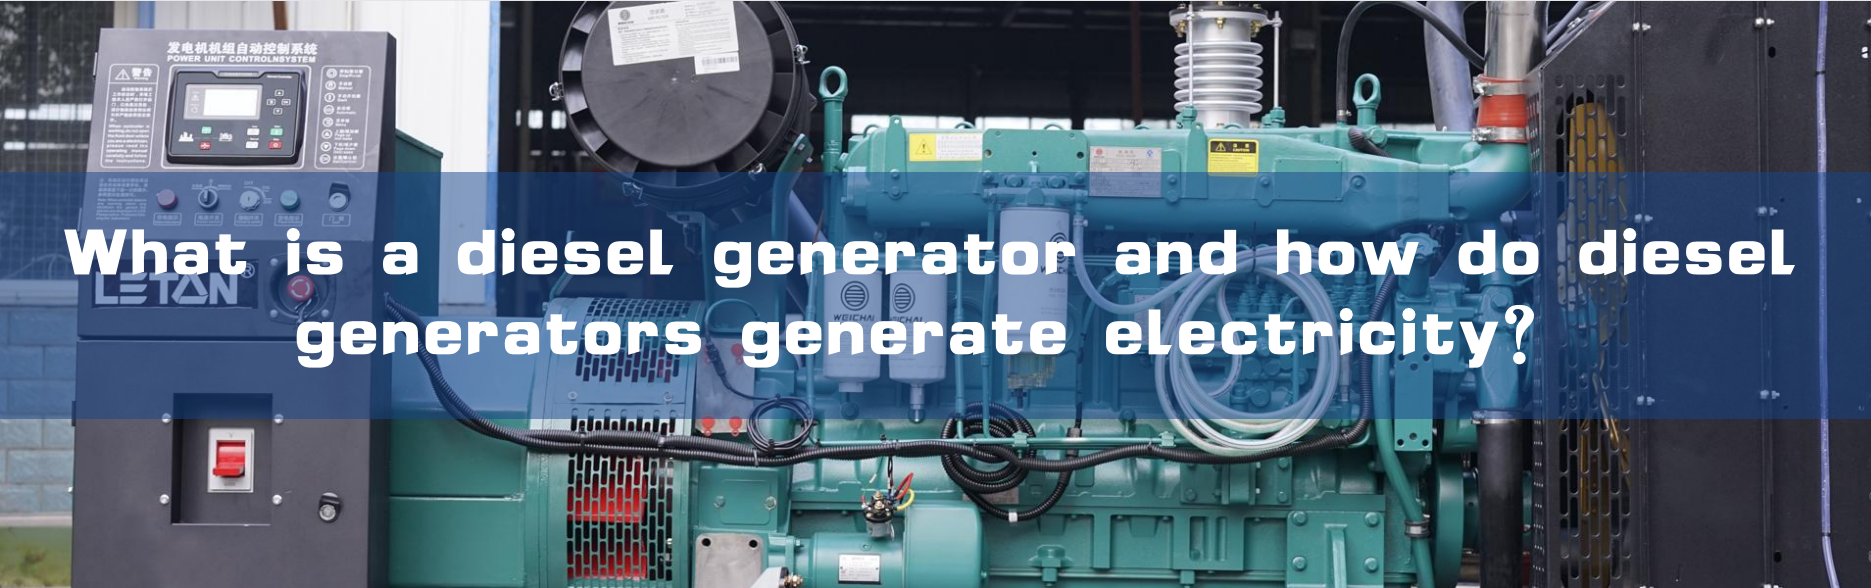 Vad är en dieselgenerator och hur genererar dieselgeneratorer elektricitet?